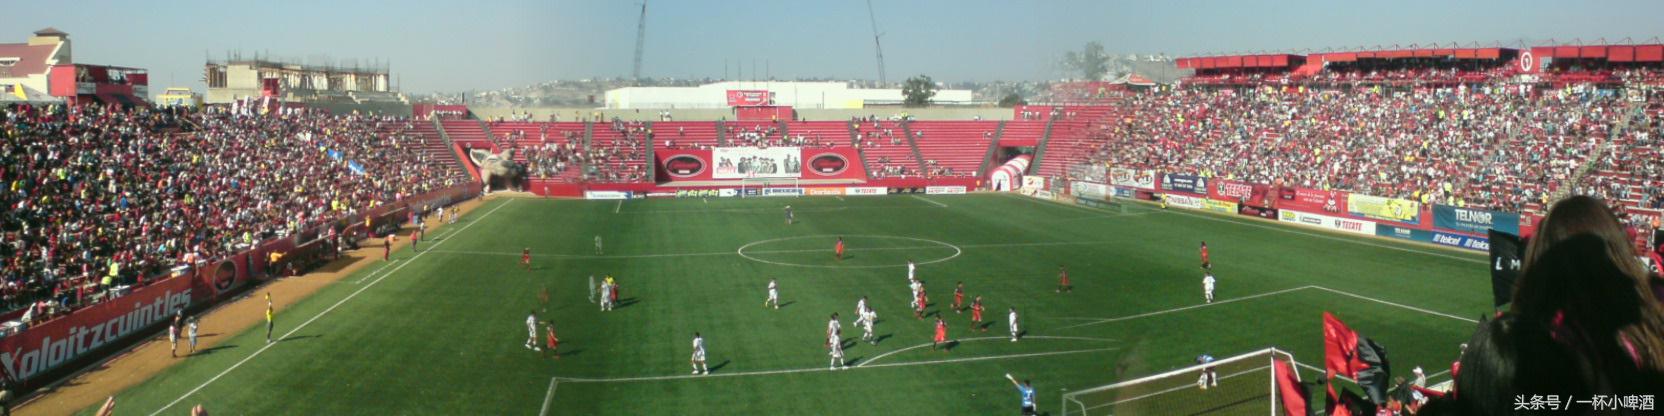 中超墨西哥联赛 墨西哥足球联赛——又一个在球场硬件上碾压中超的联赛(60)